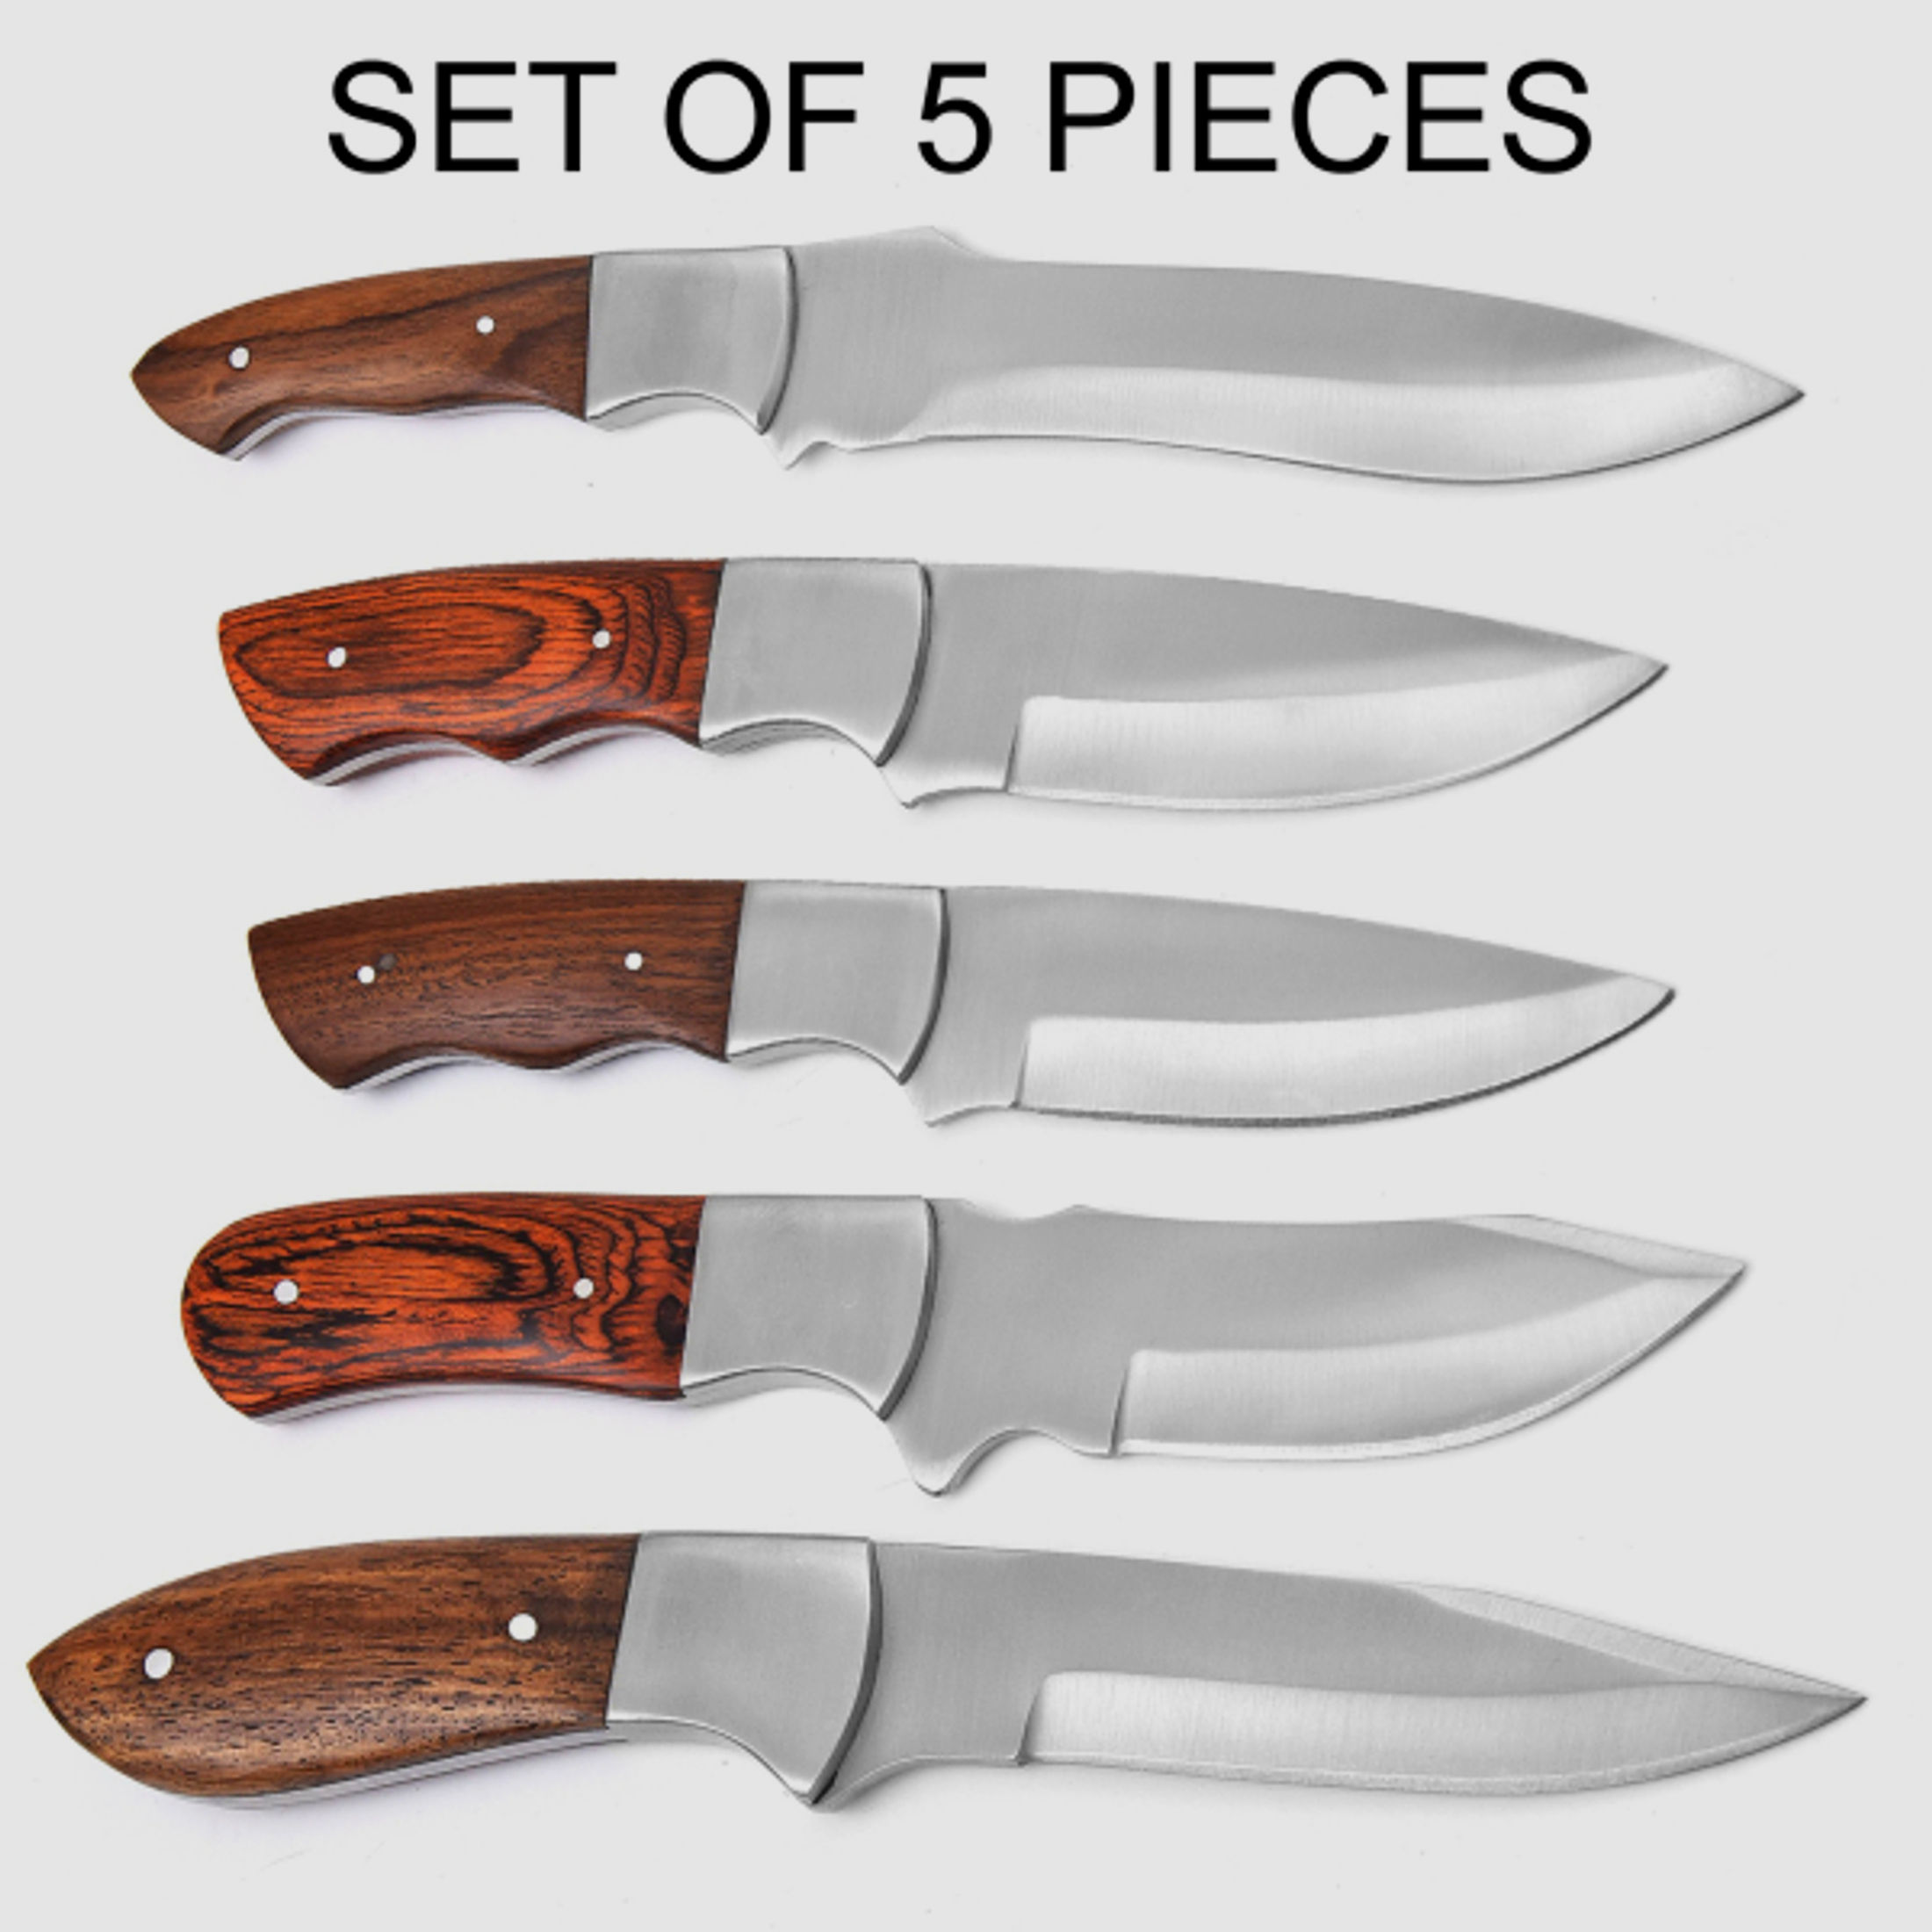 JAGD MESSER aus Steel Blade Stainless, Hand verarbeitetes set of 5 pieces1234567